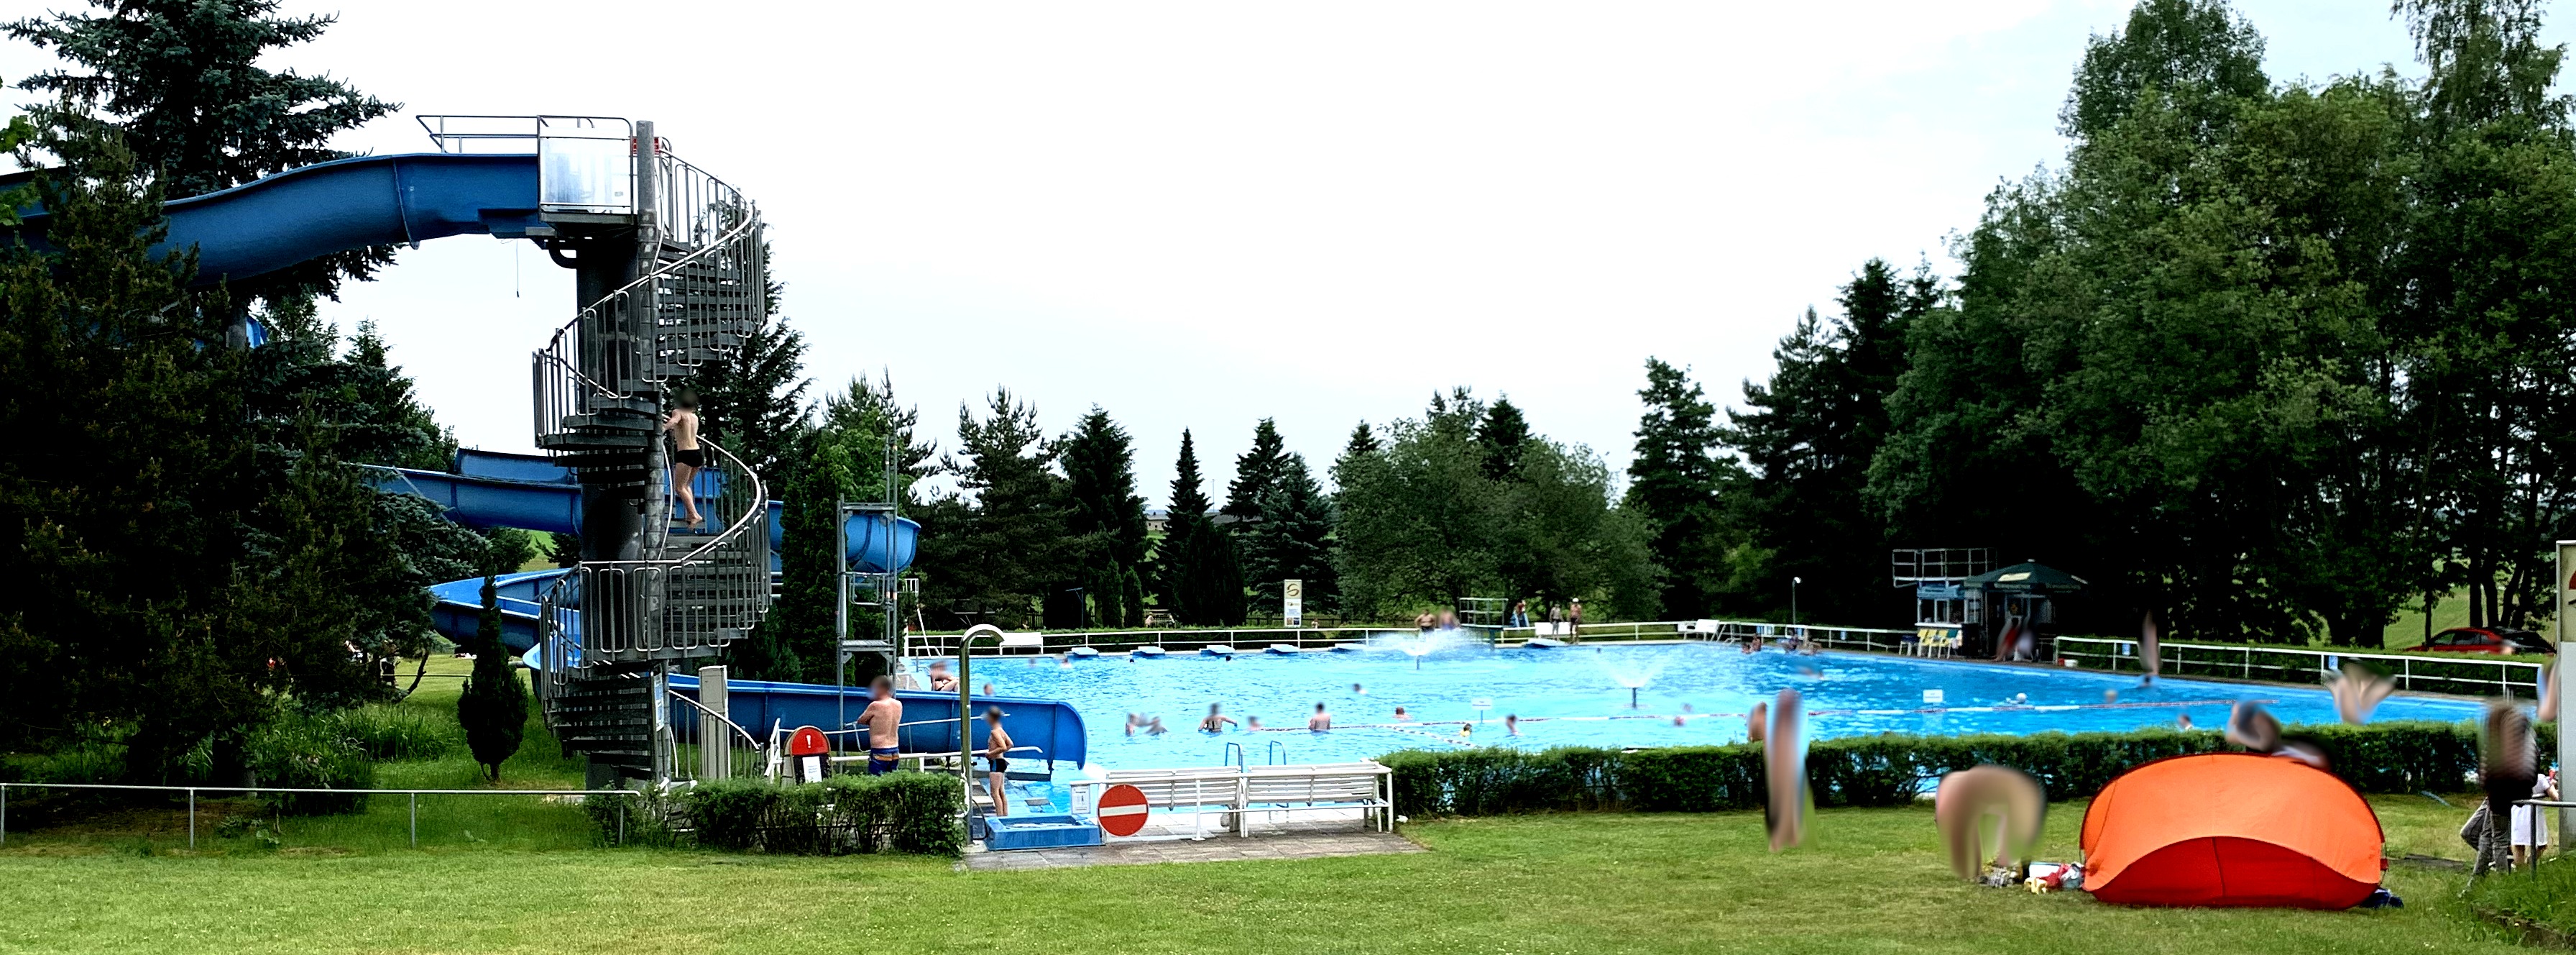 Schwimmbecken inmitten von Wiese und Bäumen. Links Wendeltreppe mit Rutsche